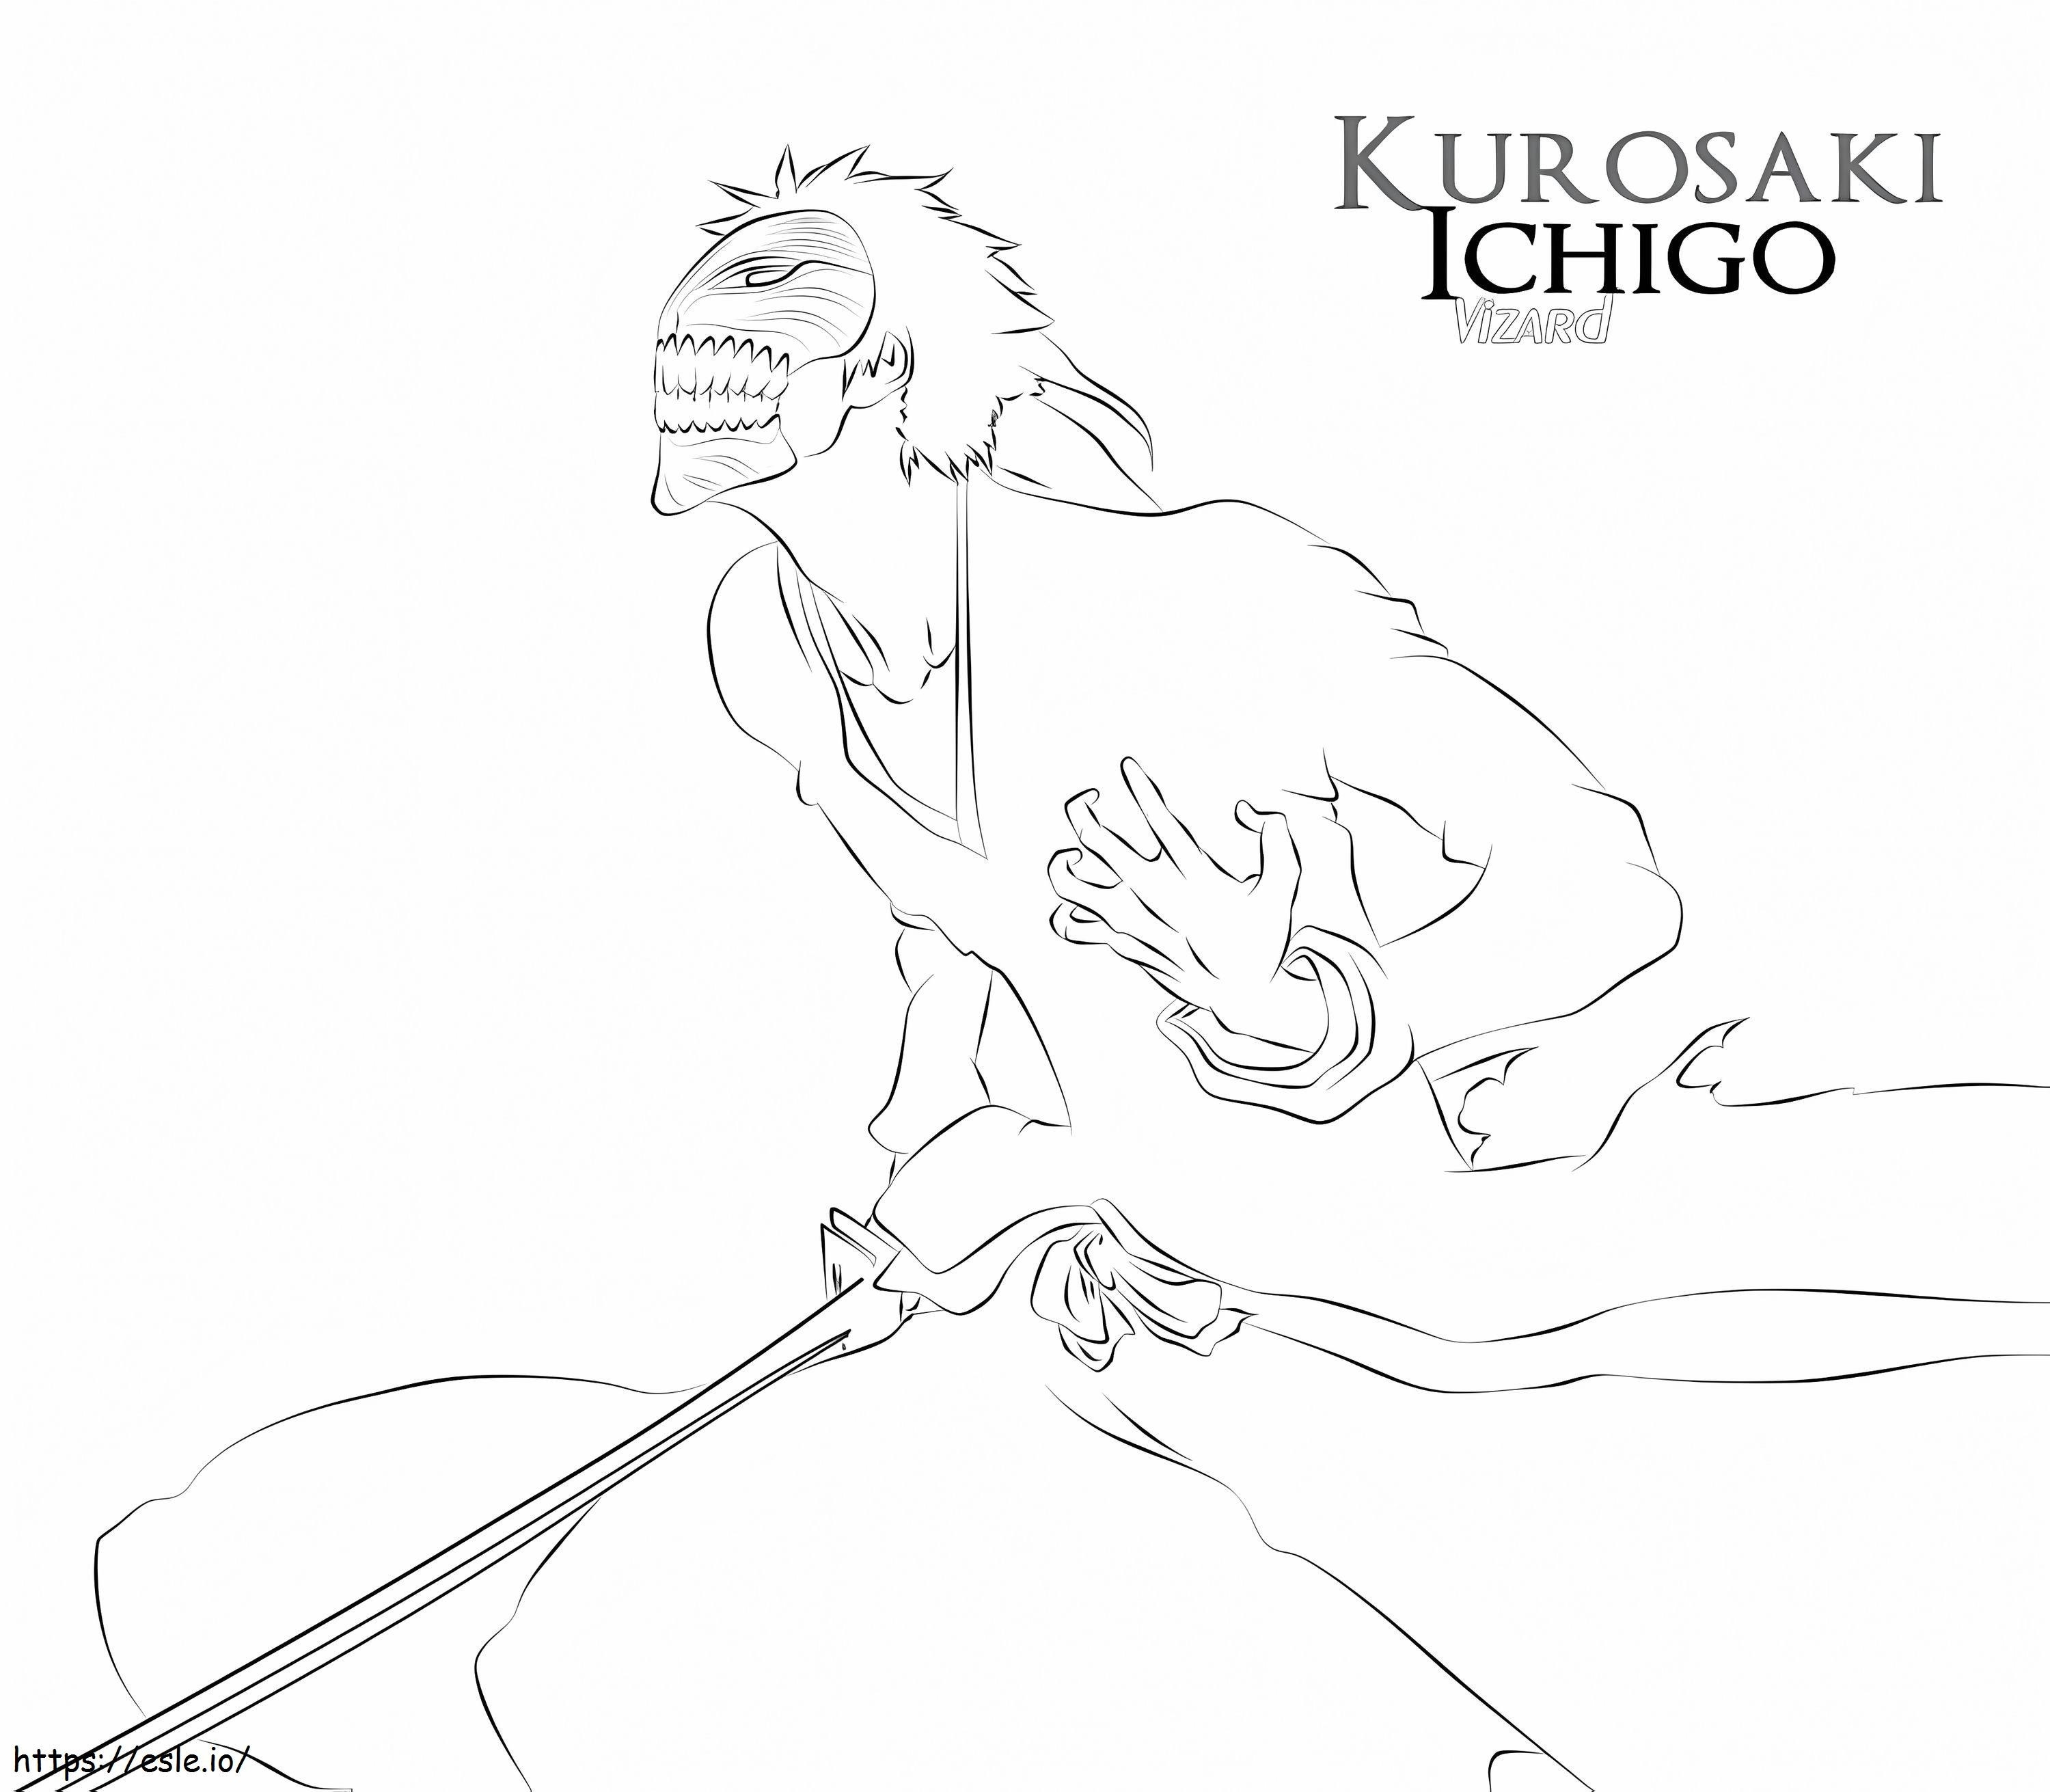 Ichigo Kurosaki Vizard coloring page